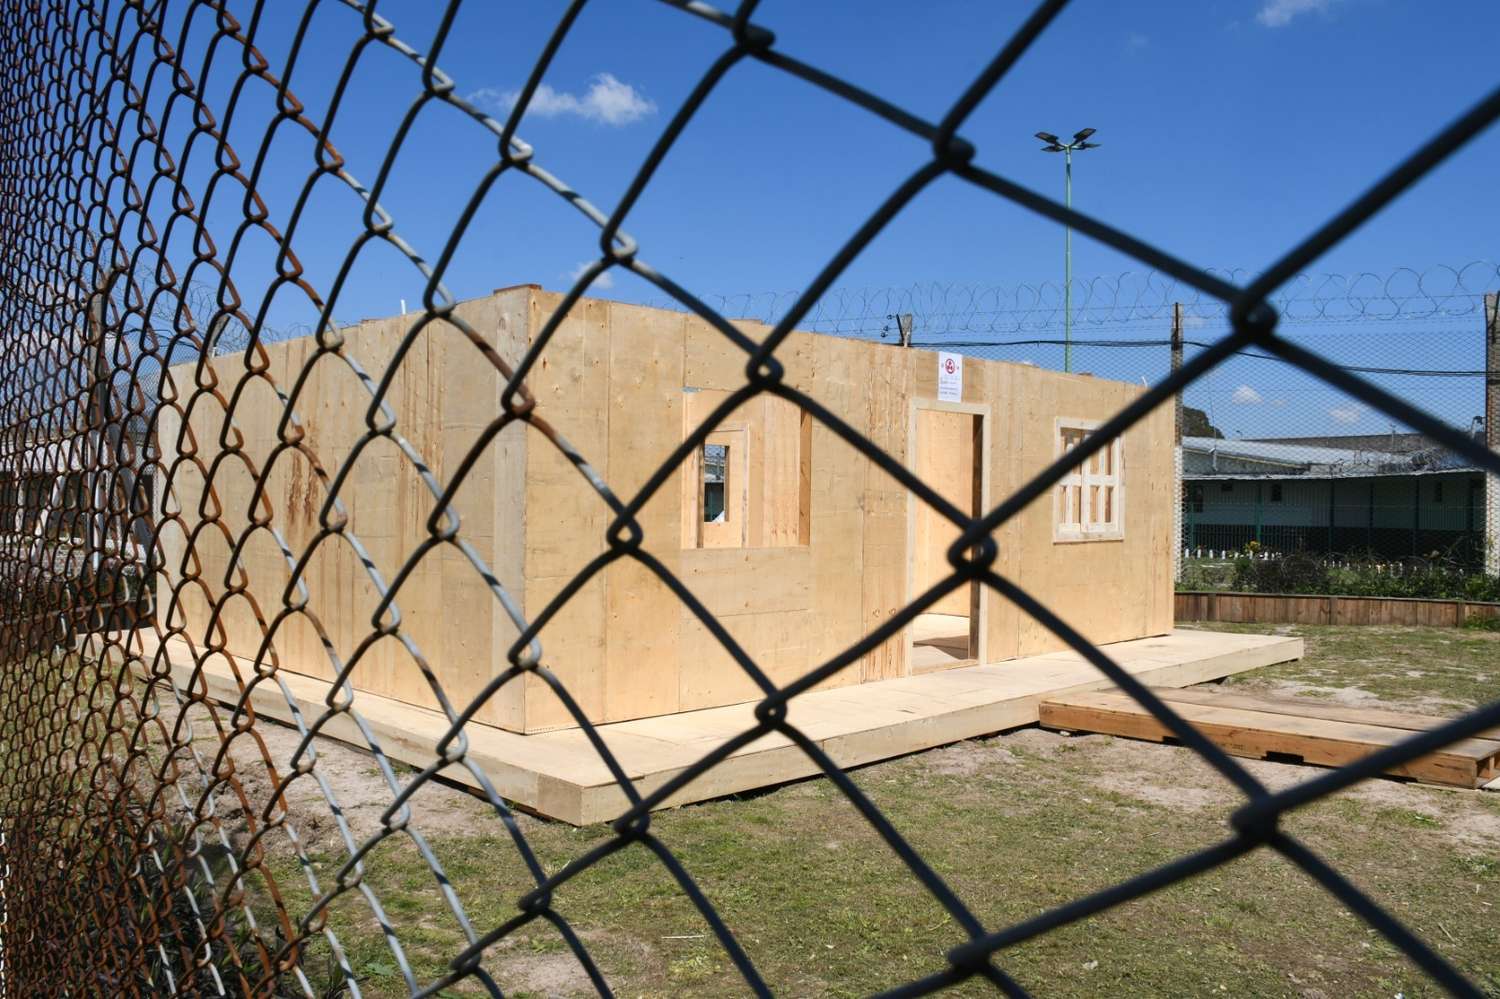 En una cárcel de San Martín construyen casas prefabricadas para donar